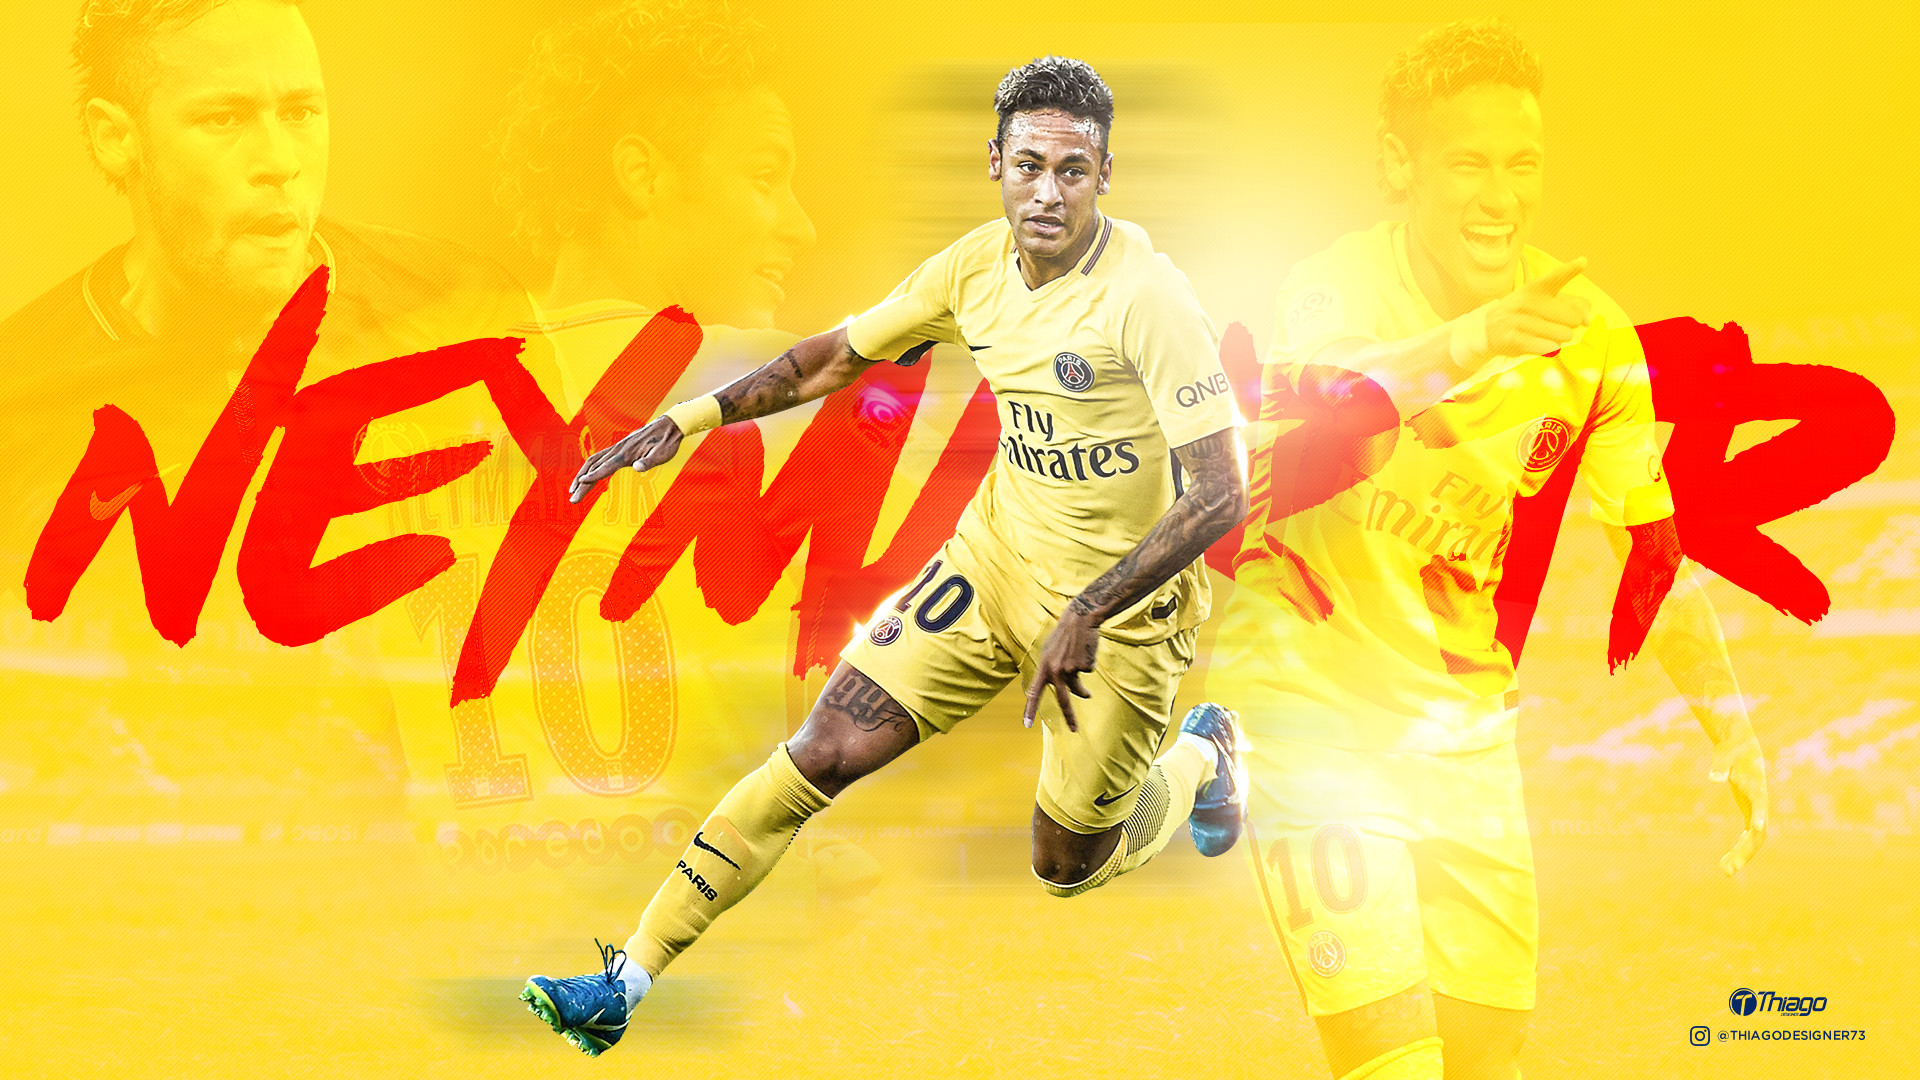 Wallpaper Neymar Jr Psg By Thiagojustino Wallpaper - Neymar Jr Psg Best - HD Wallpaper 